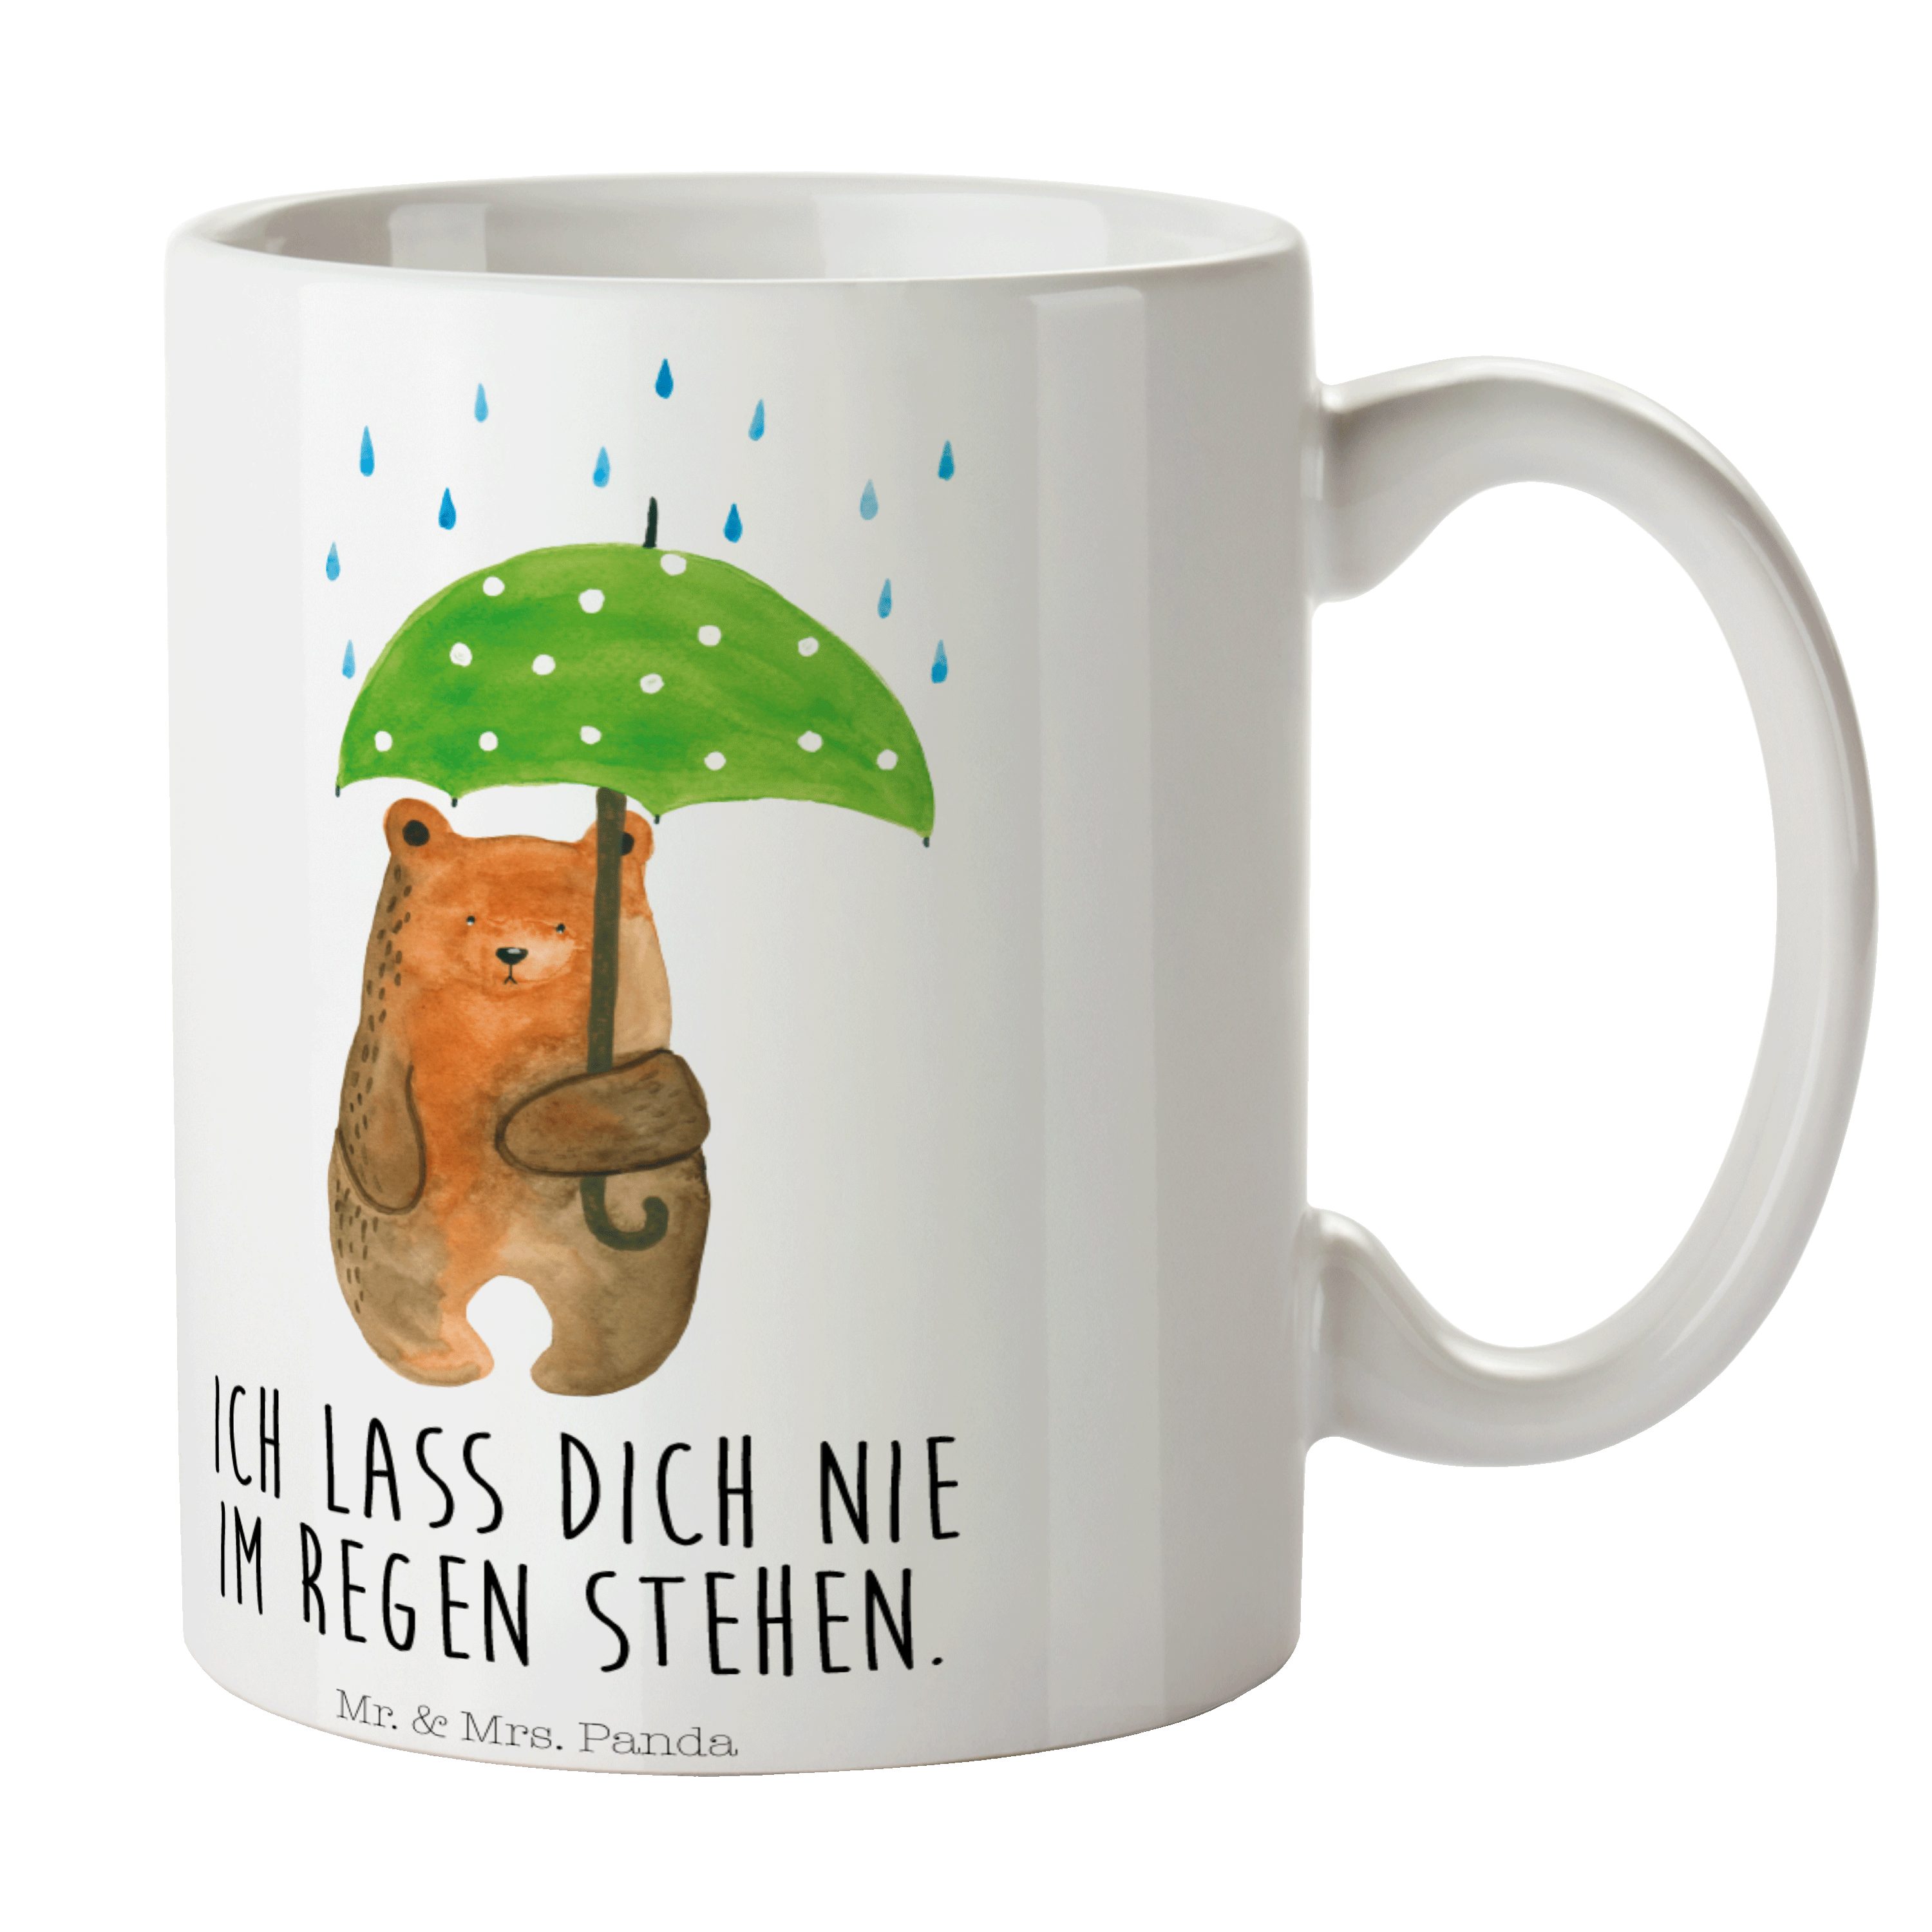 Mr. & Mrs. Panda Tasse Bär mit Regenschirm - Weiß - Geschenk, Kaffeebecher, Tasse, Porzellan, Keramik